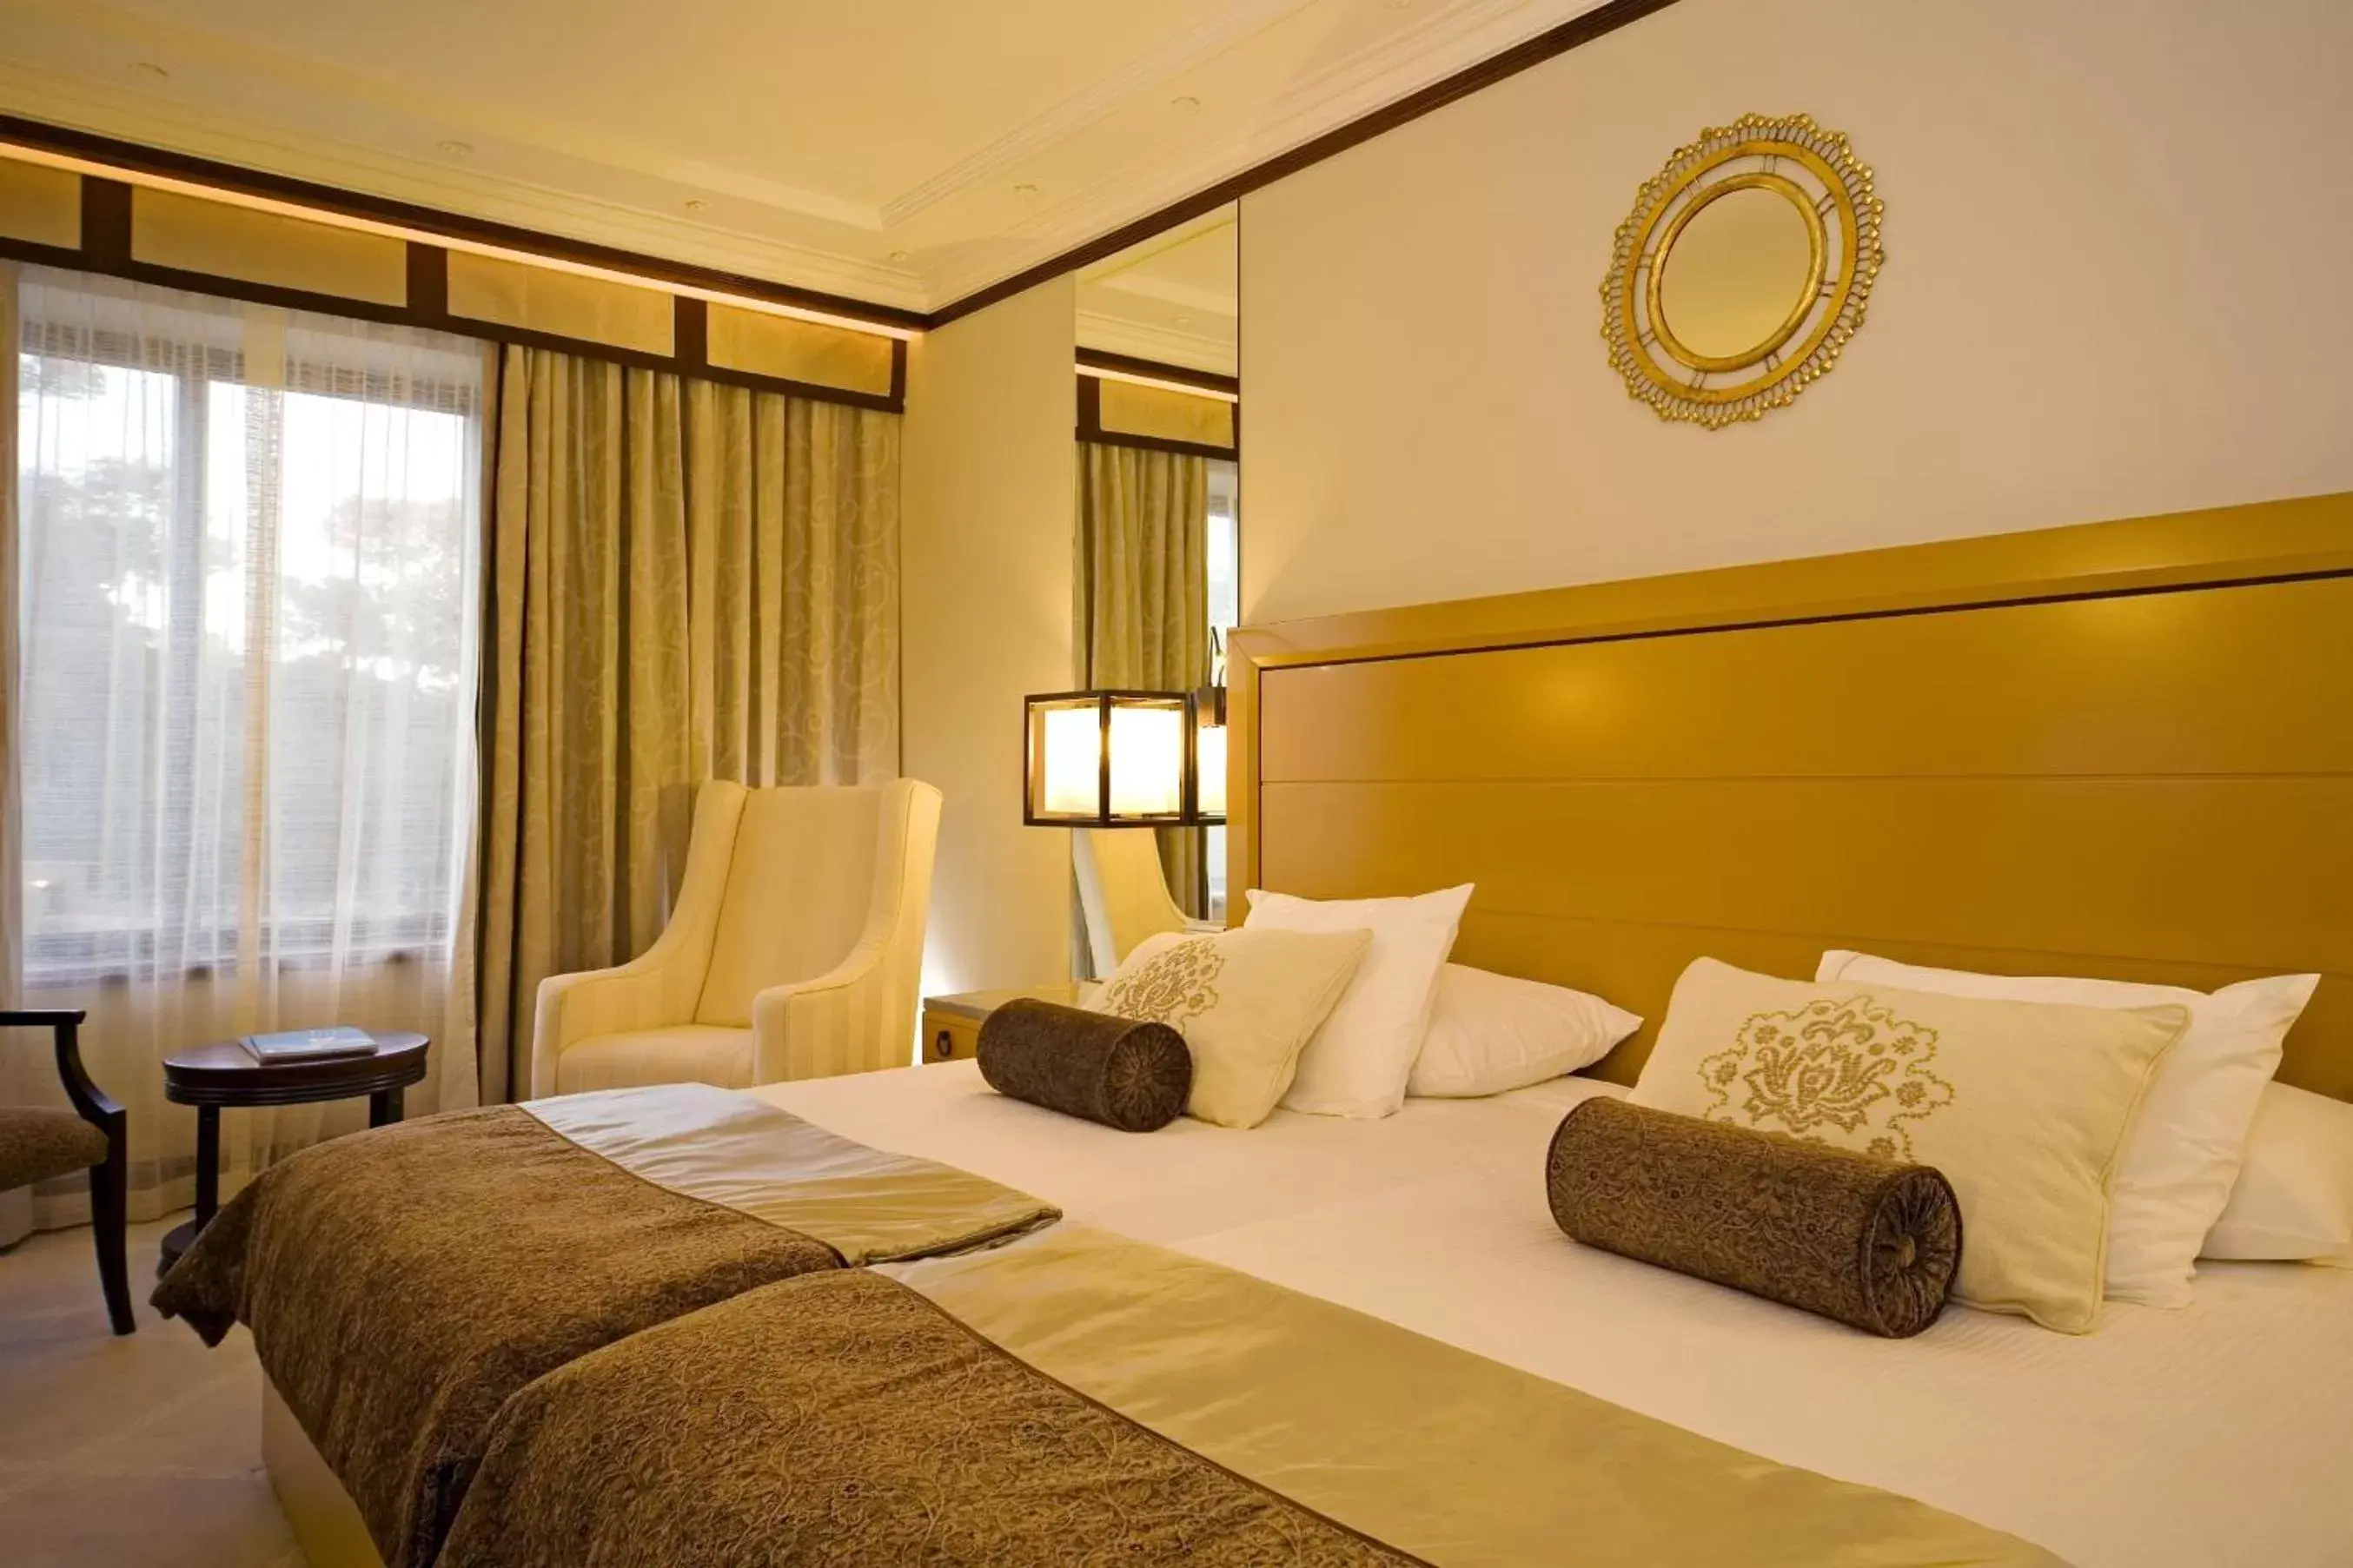 Bed in Grande Real Villa Itália Hotel & Spa